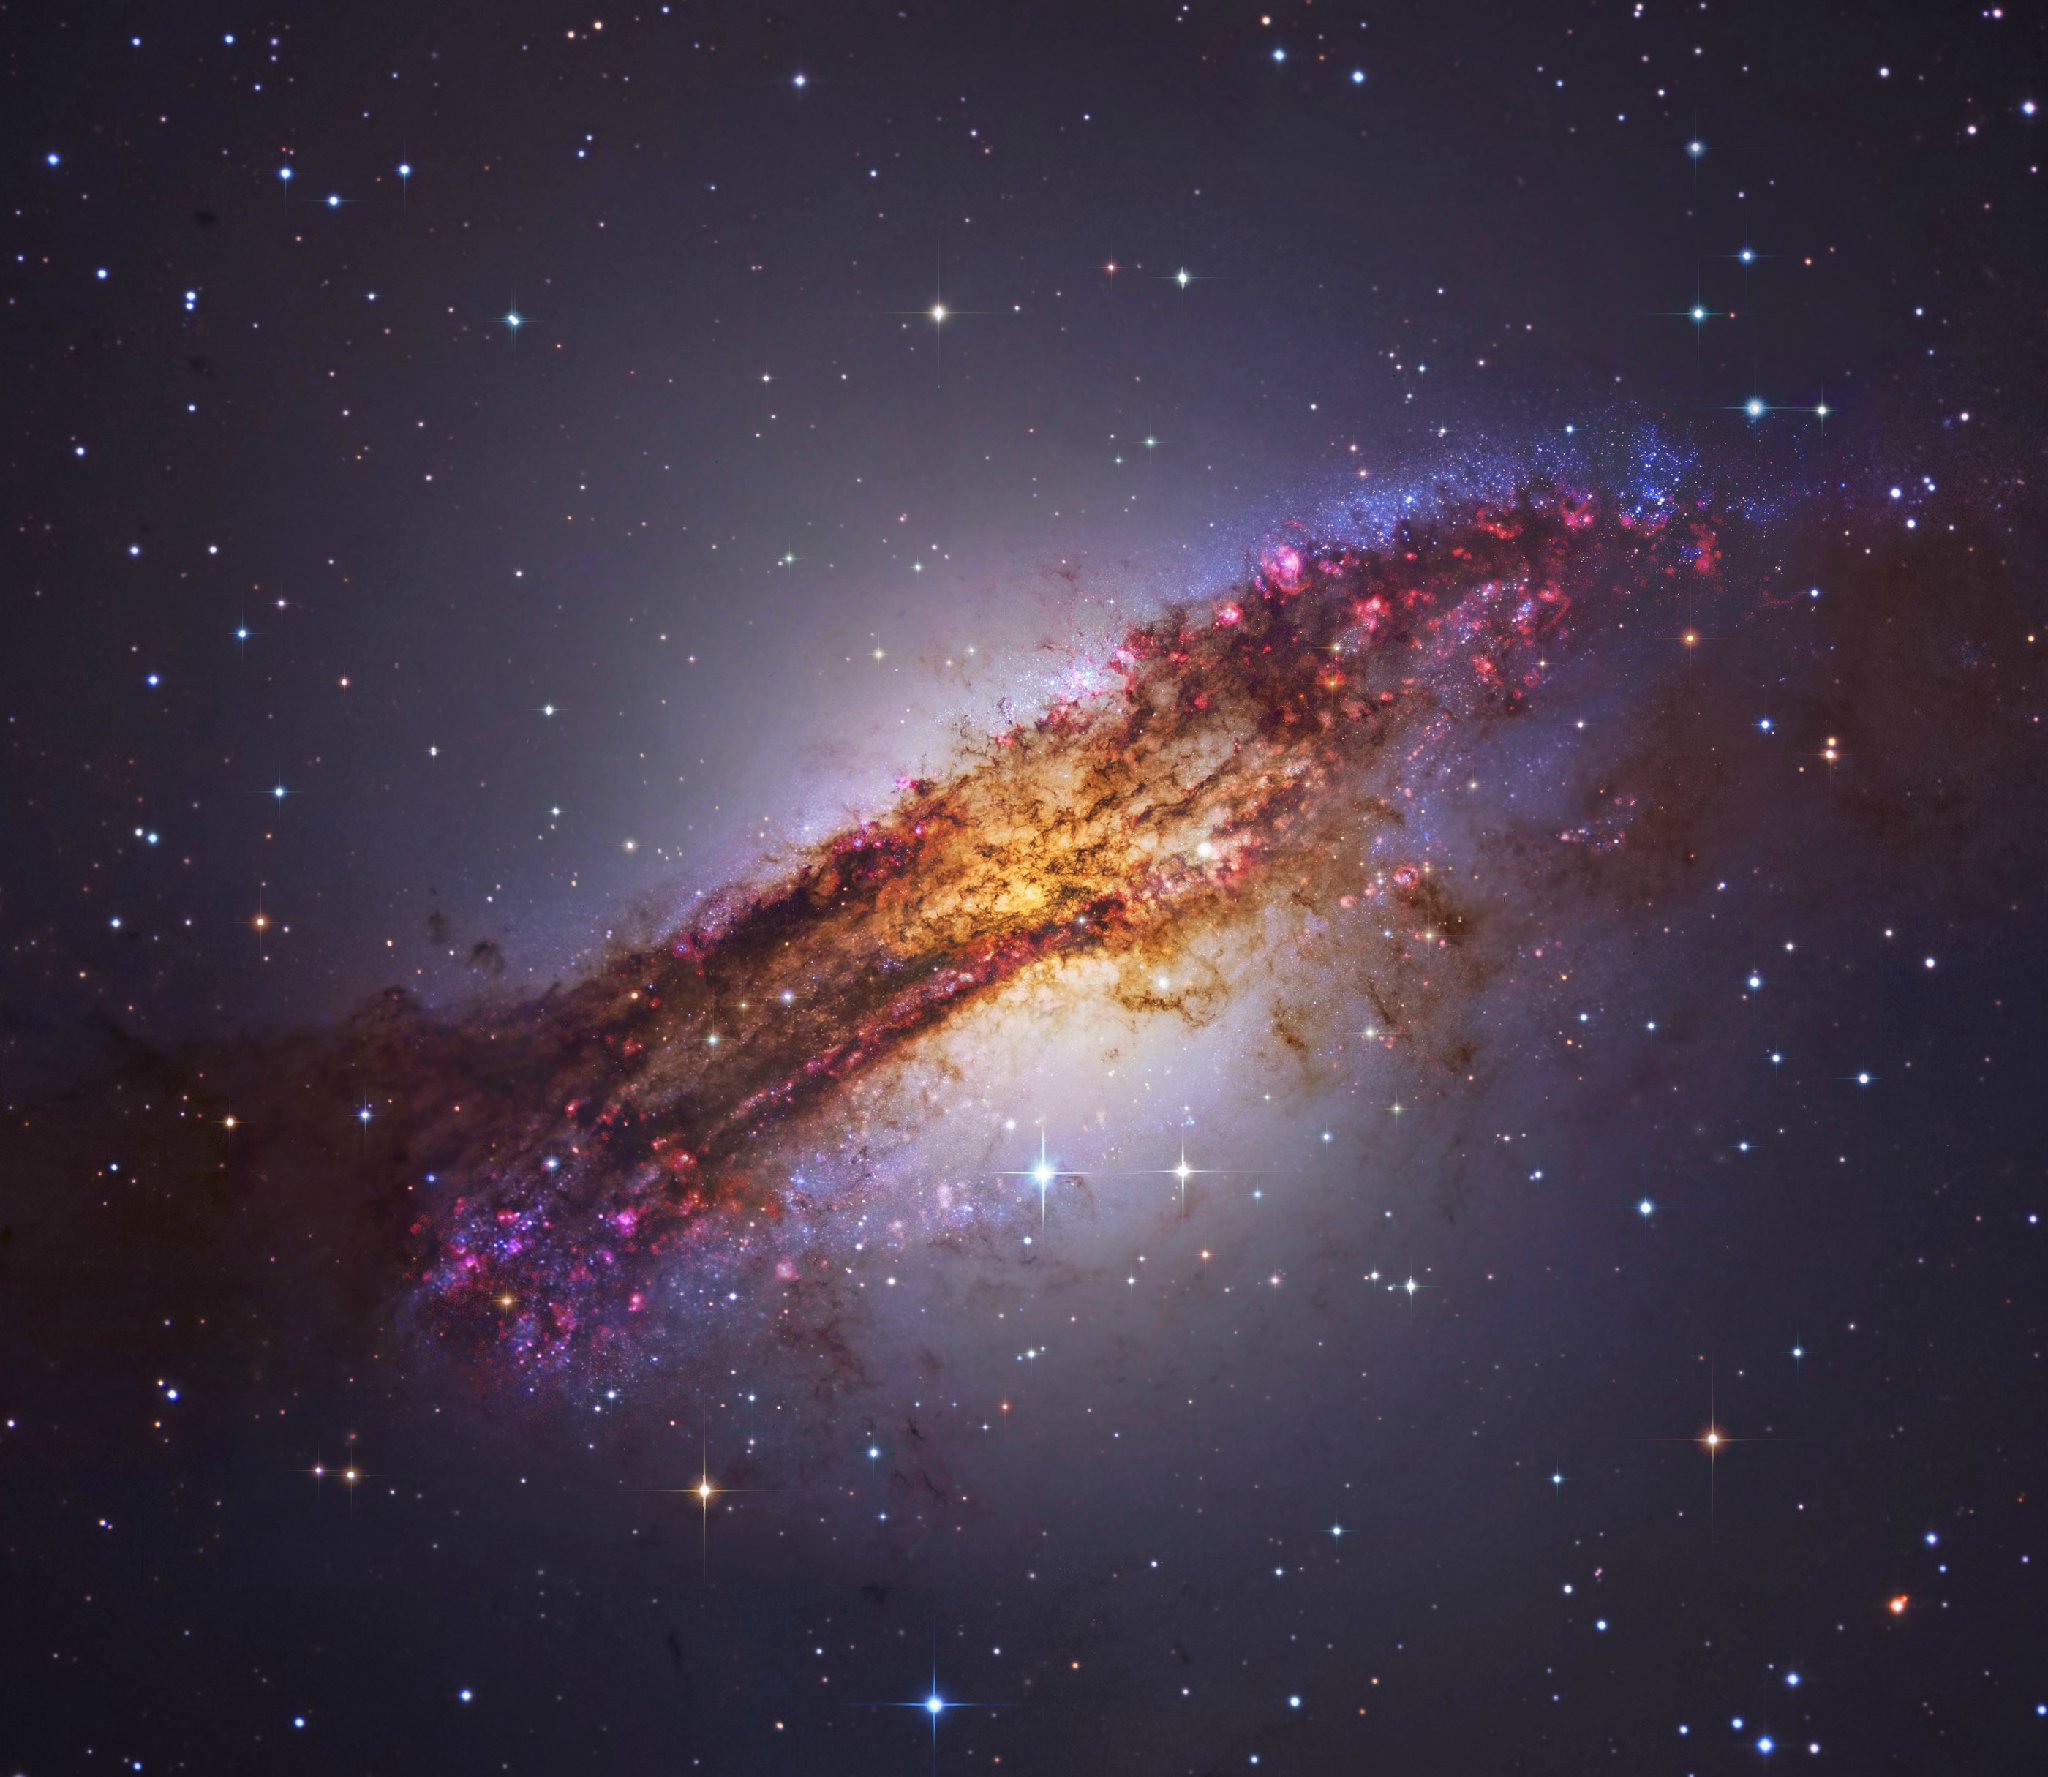 半人马座a,又称ngc 5128,由两个星系互撞而成,距离我们约为1100万光年